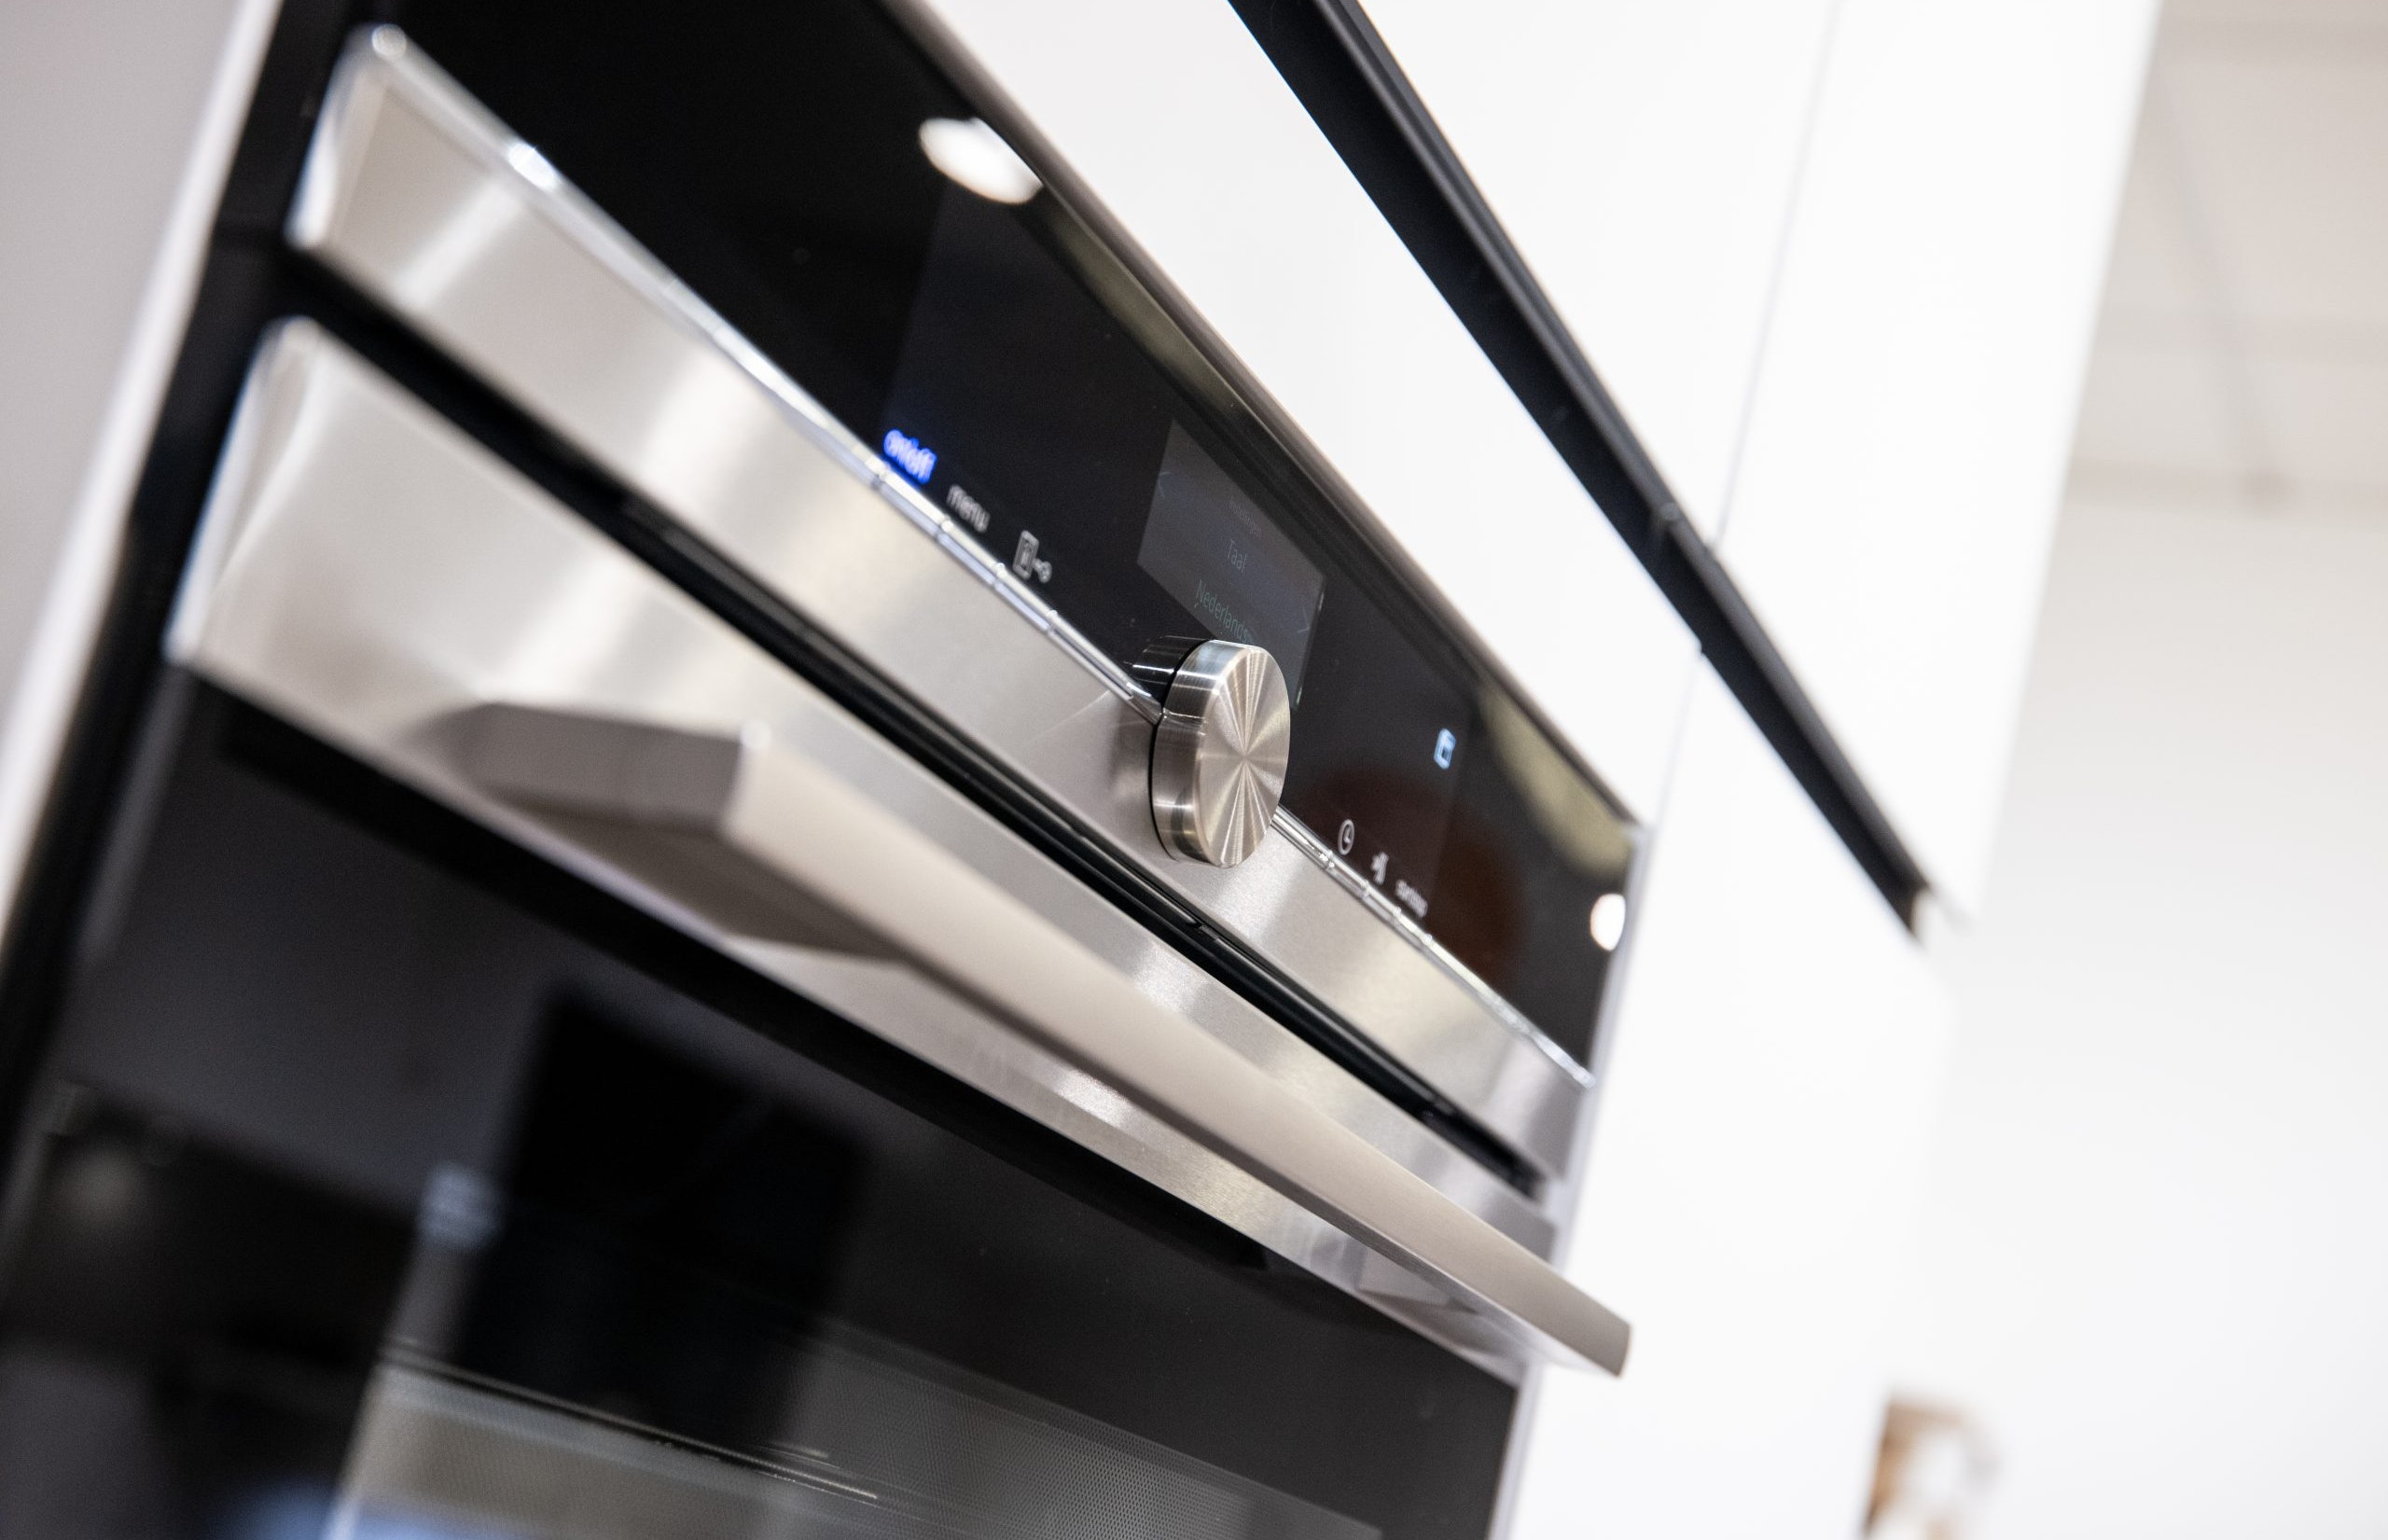 Deze inbouw-oven is van hoogwaardige kwaliteit - Bemmel & Kroon keukens